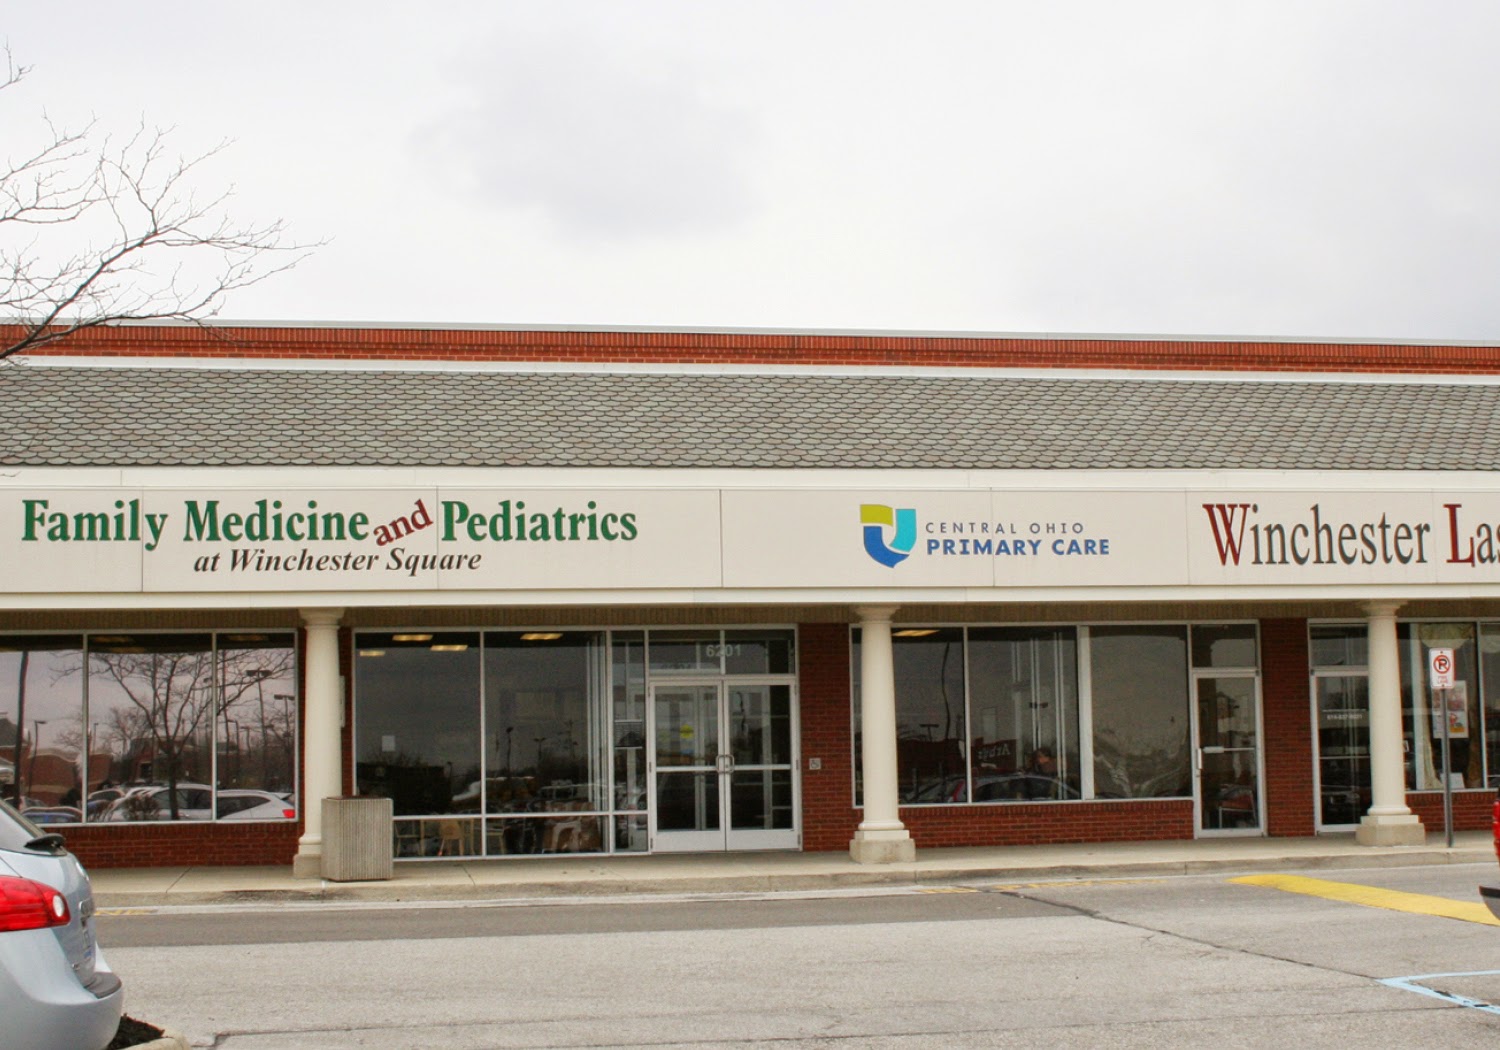 Family Medicine & Pediatrics at Winchester Square - Central Ohio Primary Care